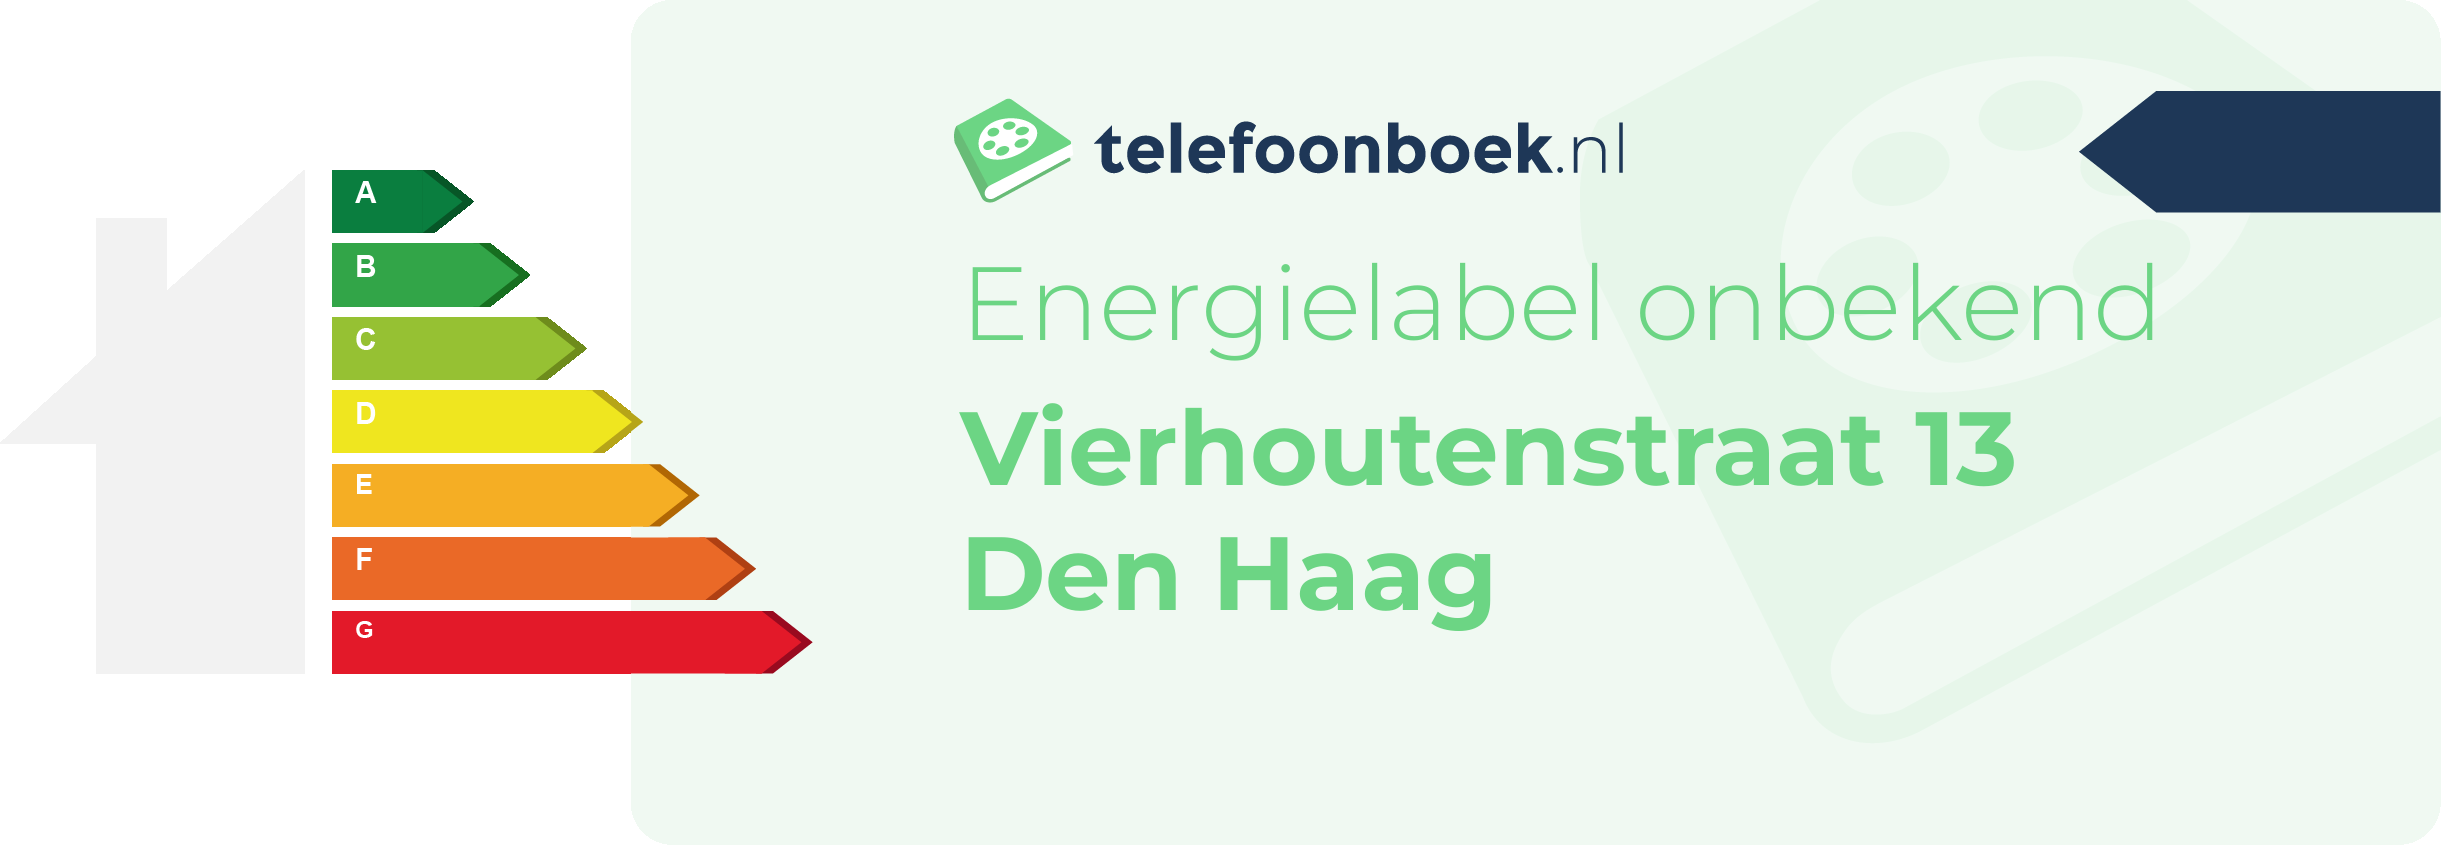 Energielabel Vierhoutenstraat 13 Den Haag